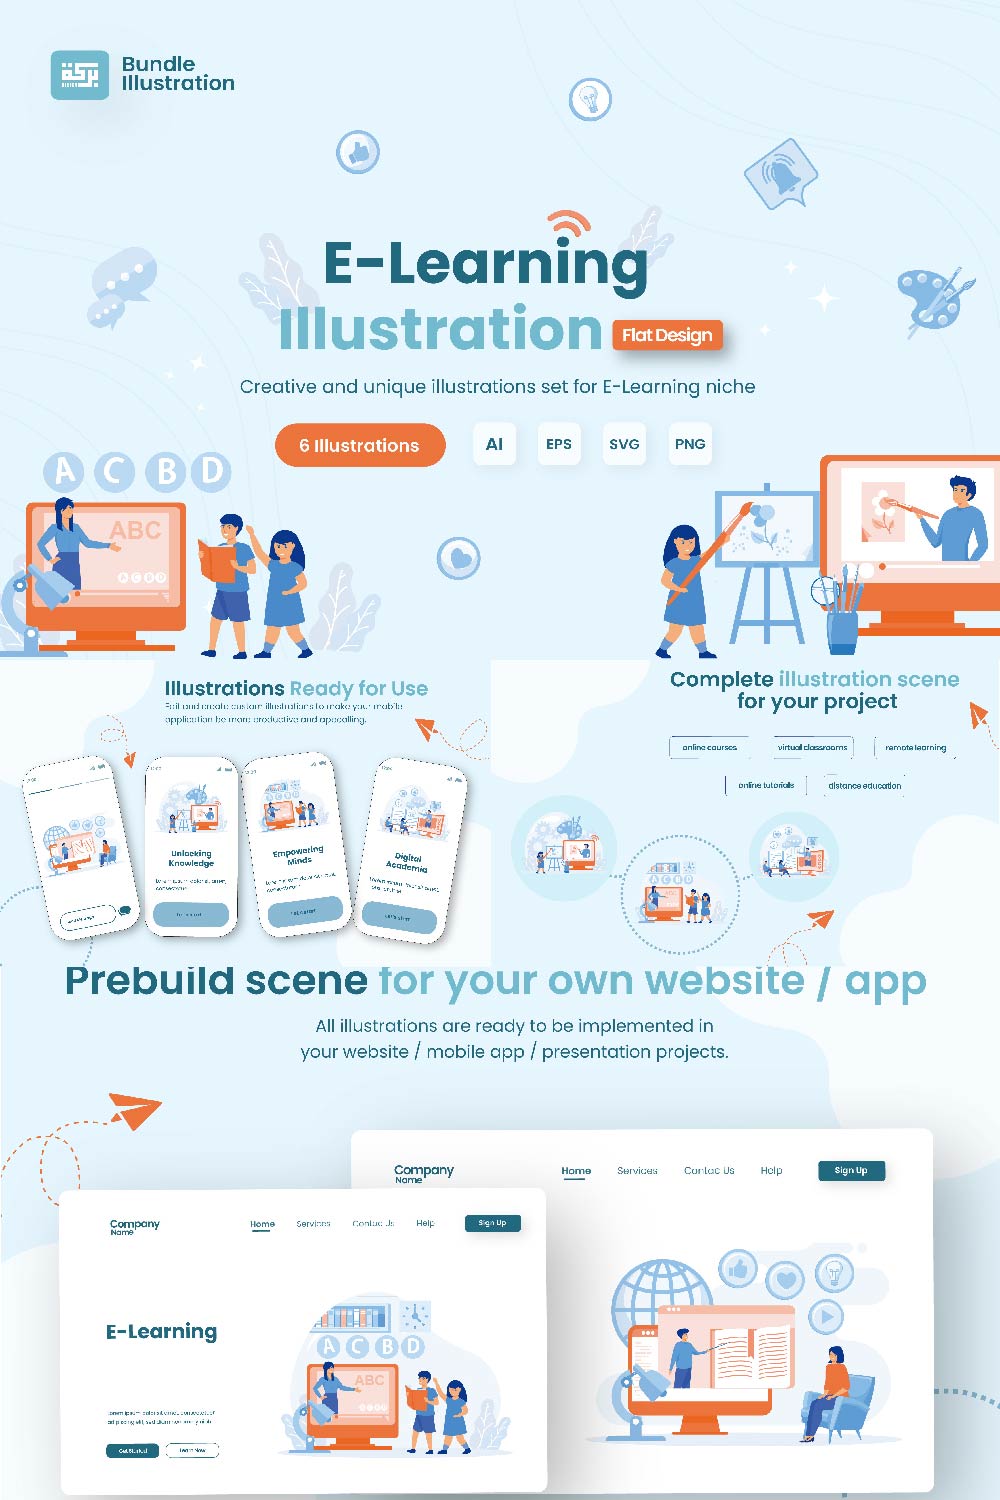 E- Learning Illustration Design pinterest preview image.